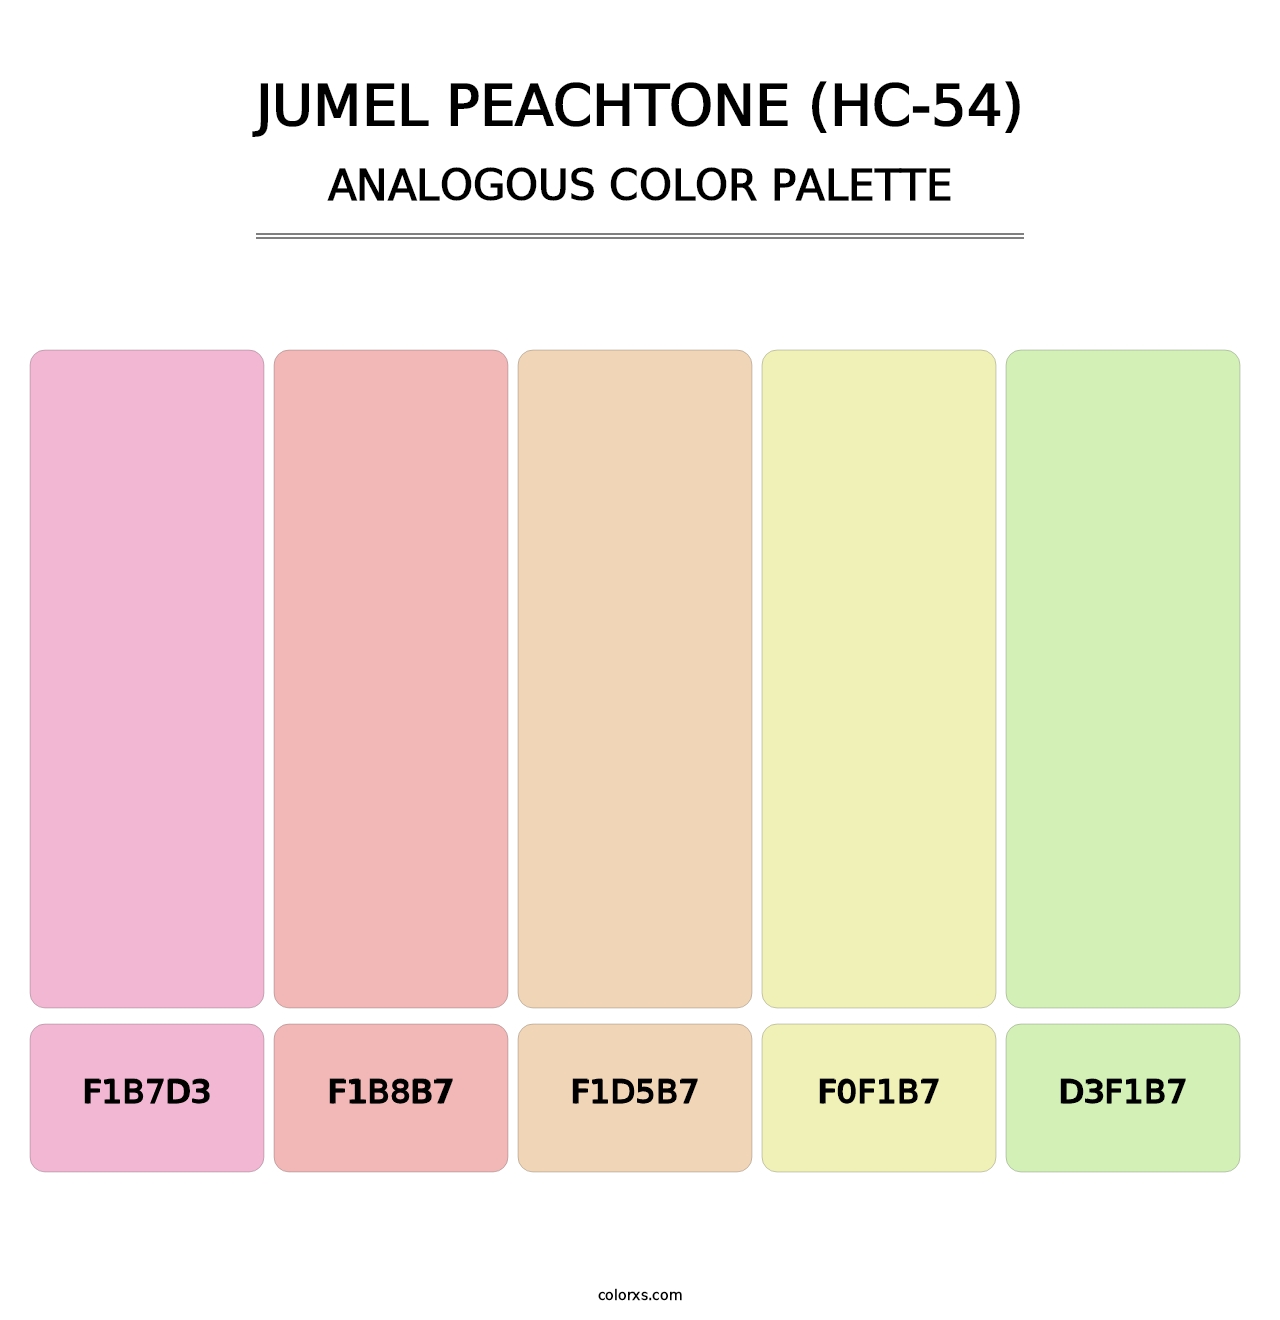 Jumel Peachtone (HC-54) - Analogous Color Palette